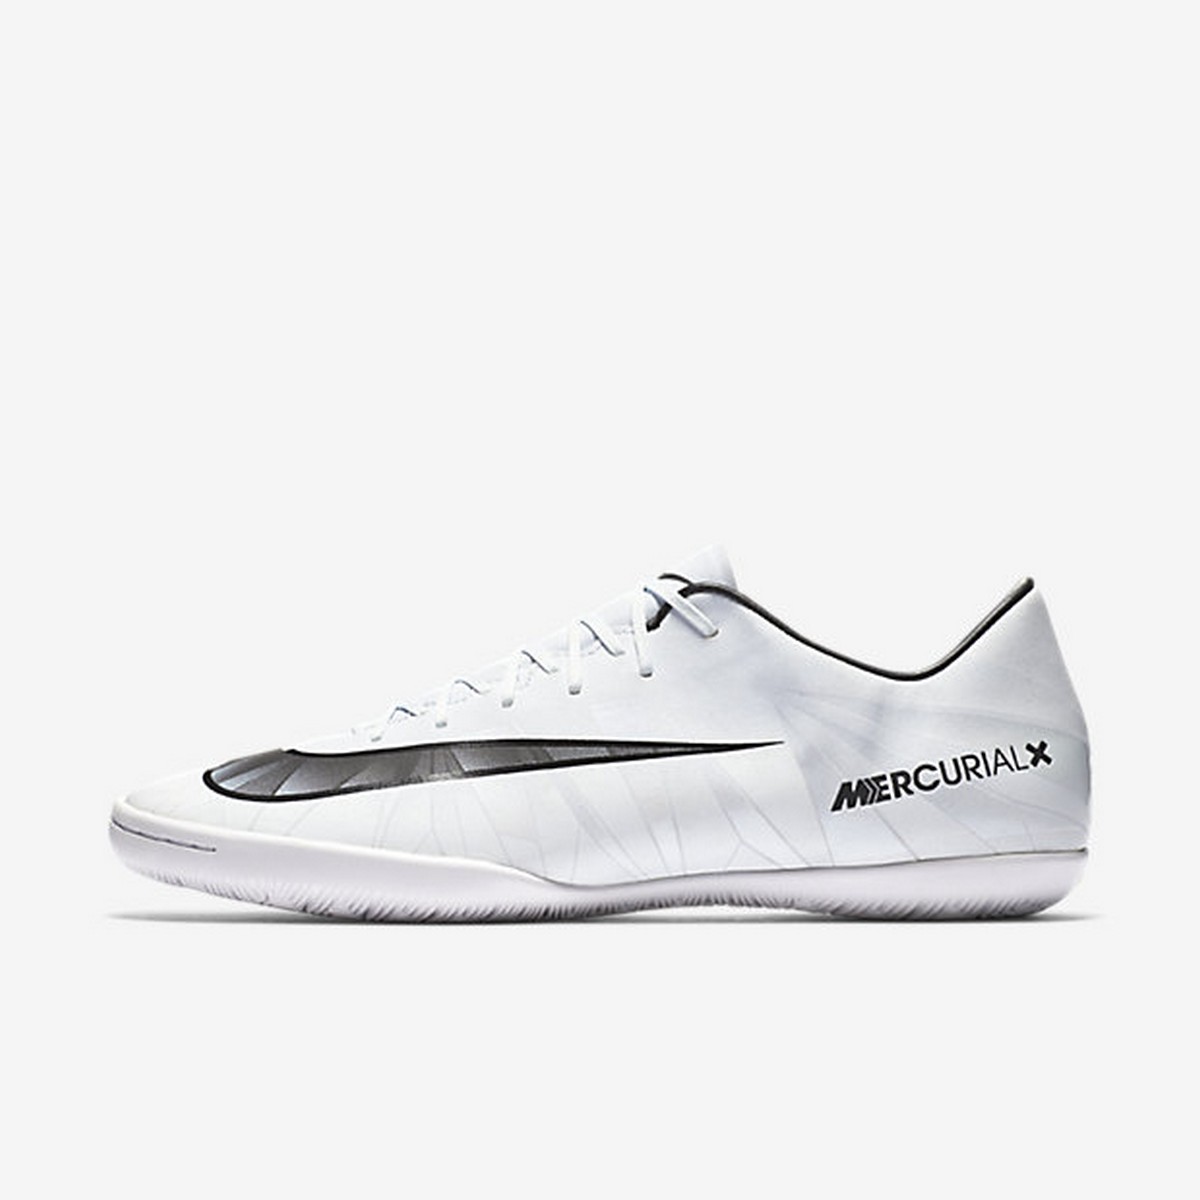 Nike MERCURIALX VICTORY VI CR7 IC 